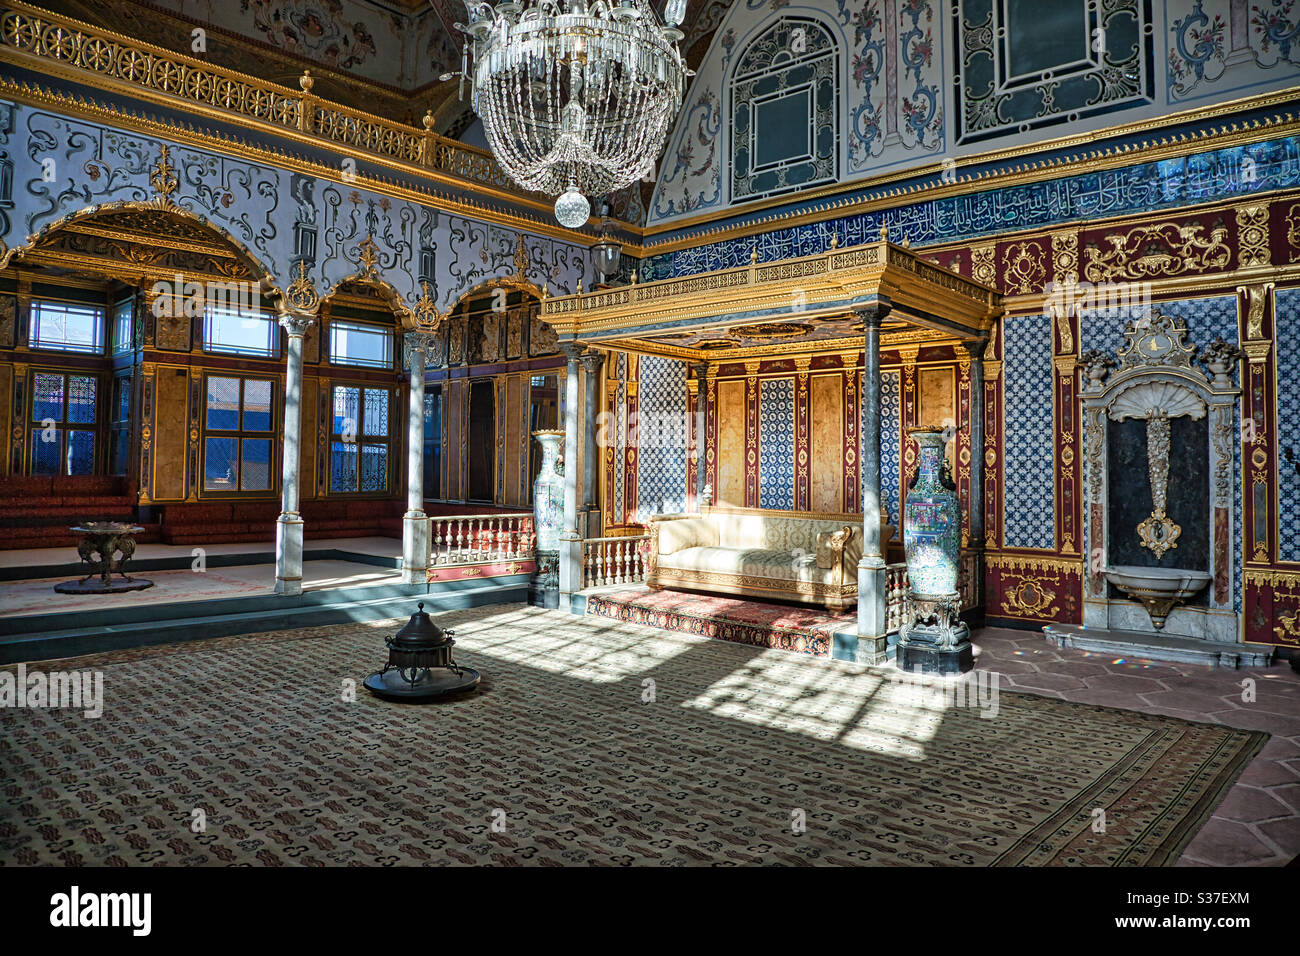 Le Harem au Palais de Topkapi, Istanbul, Turquie. Le palais était le lieu résidentiel officiel des sultans ottomans. Le Harem se composait d'appartements où vivaient les sultans avec leurs familles. Banque D'Images